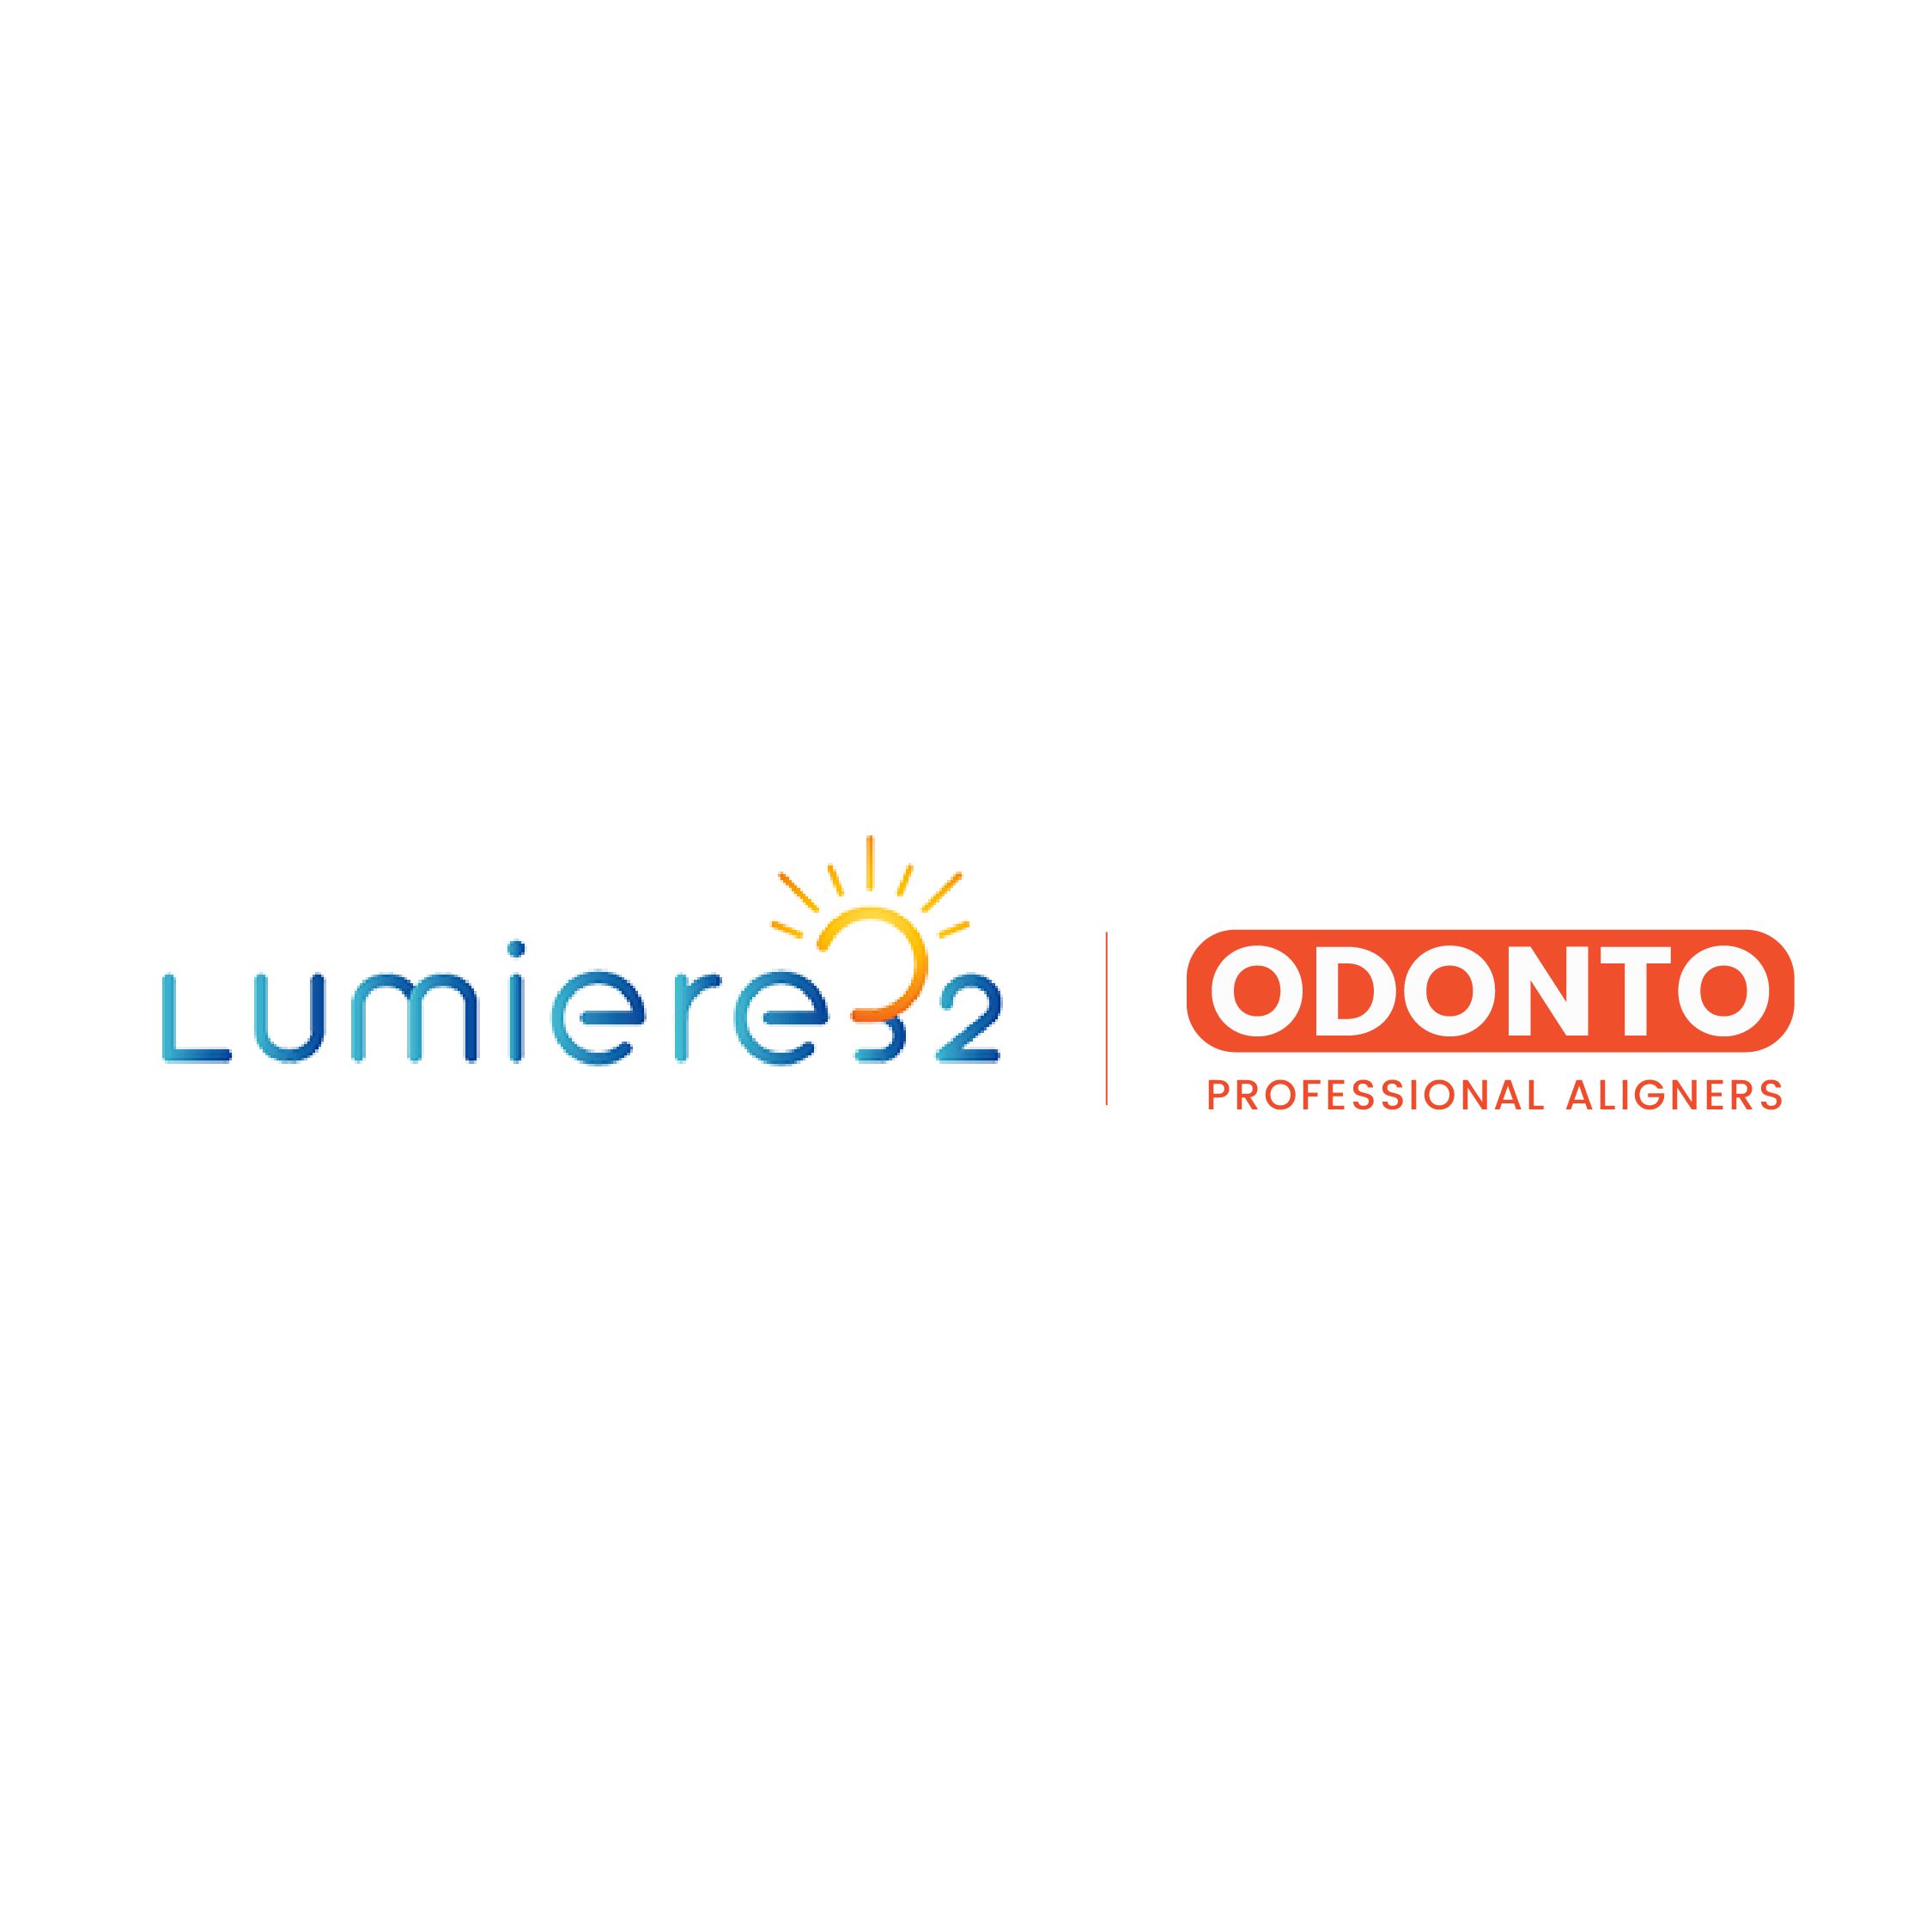 Lumiere32 Ltd